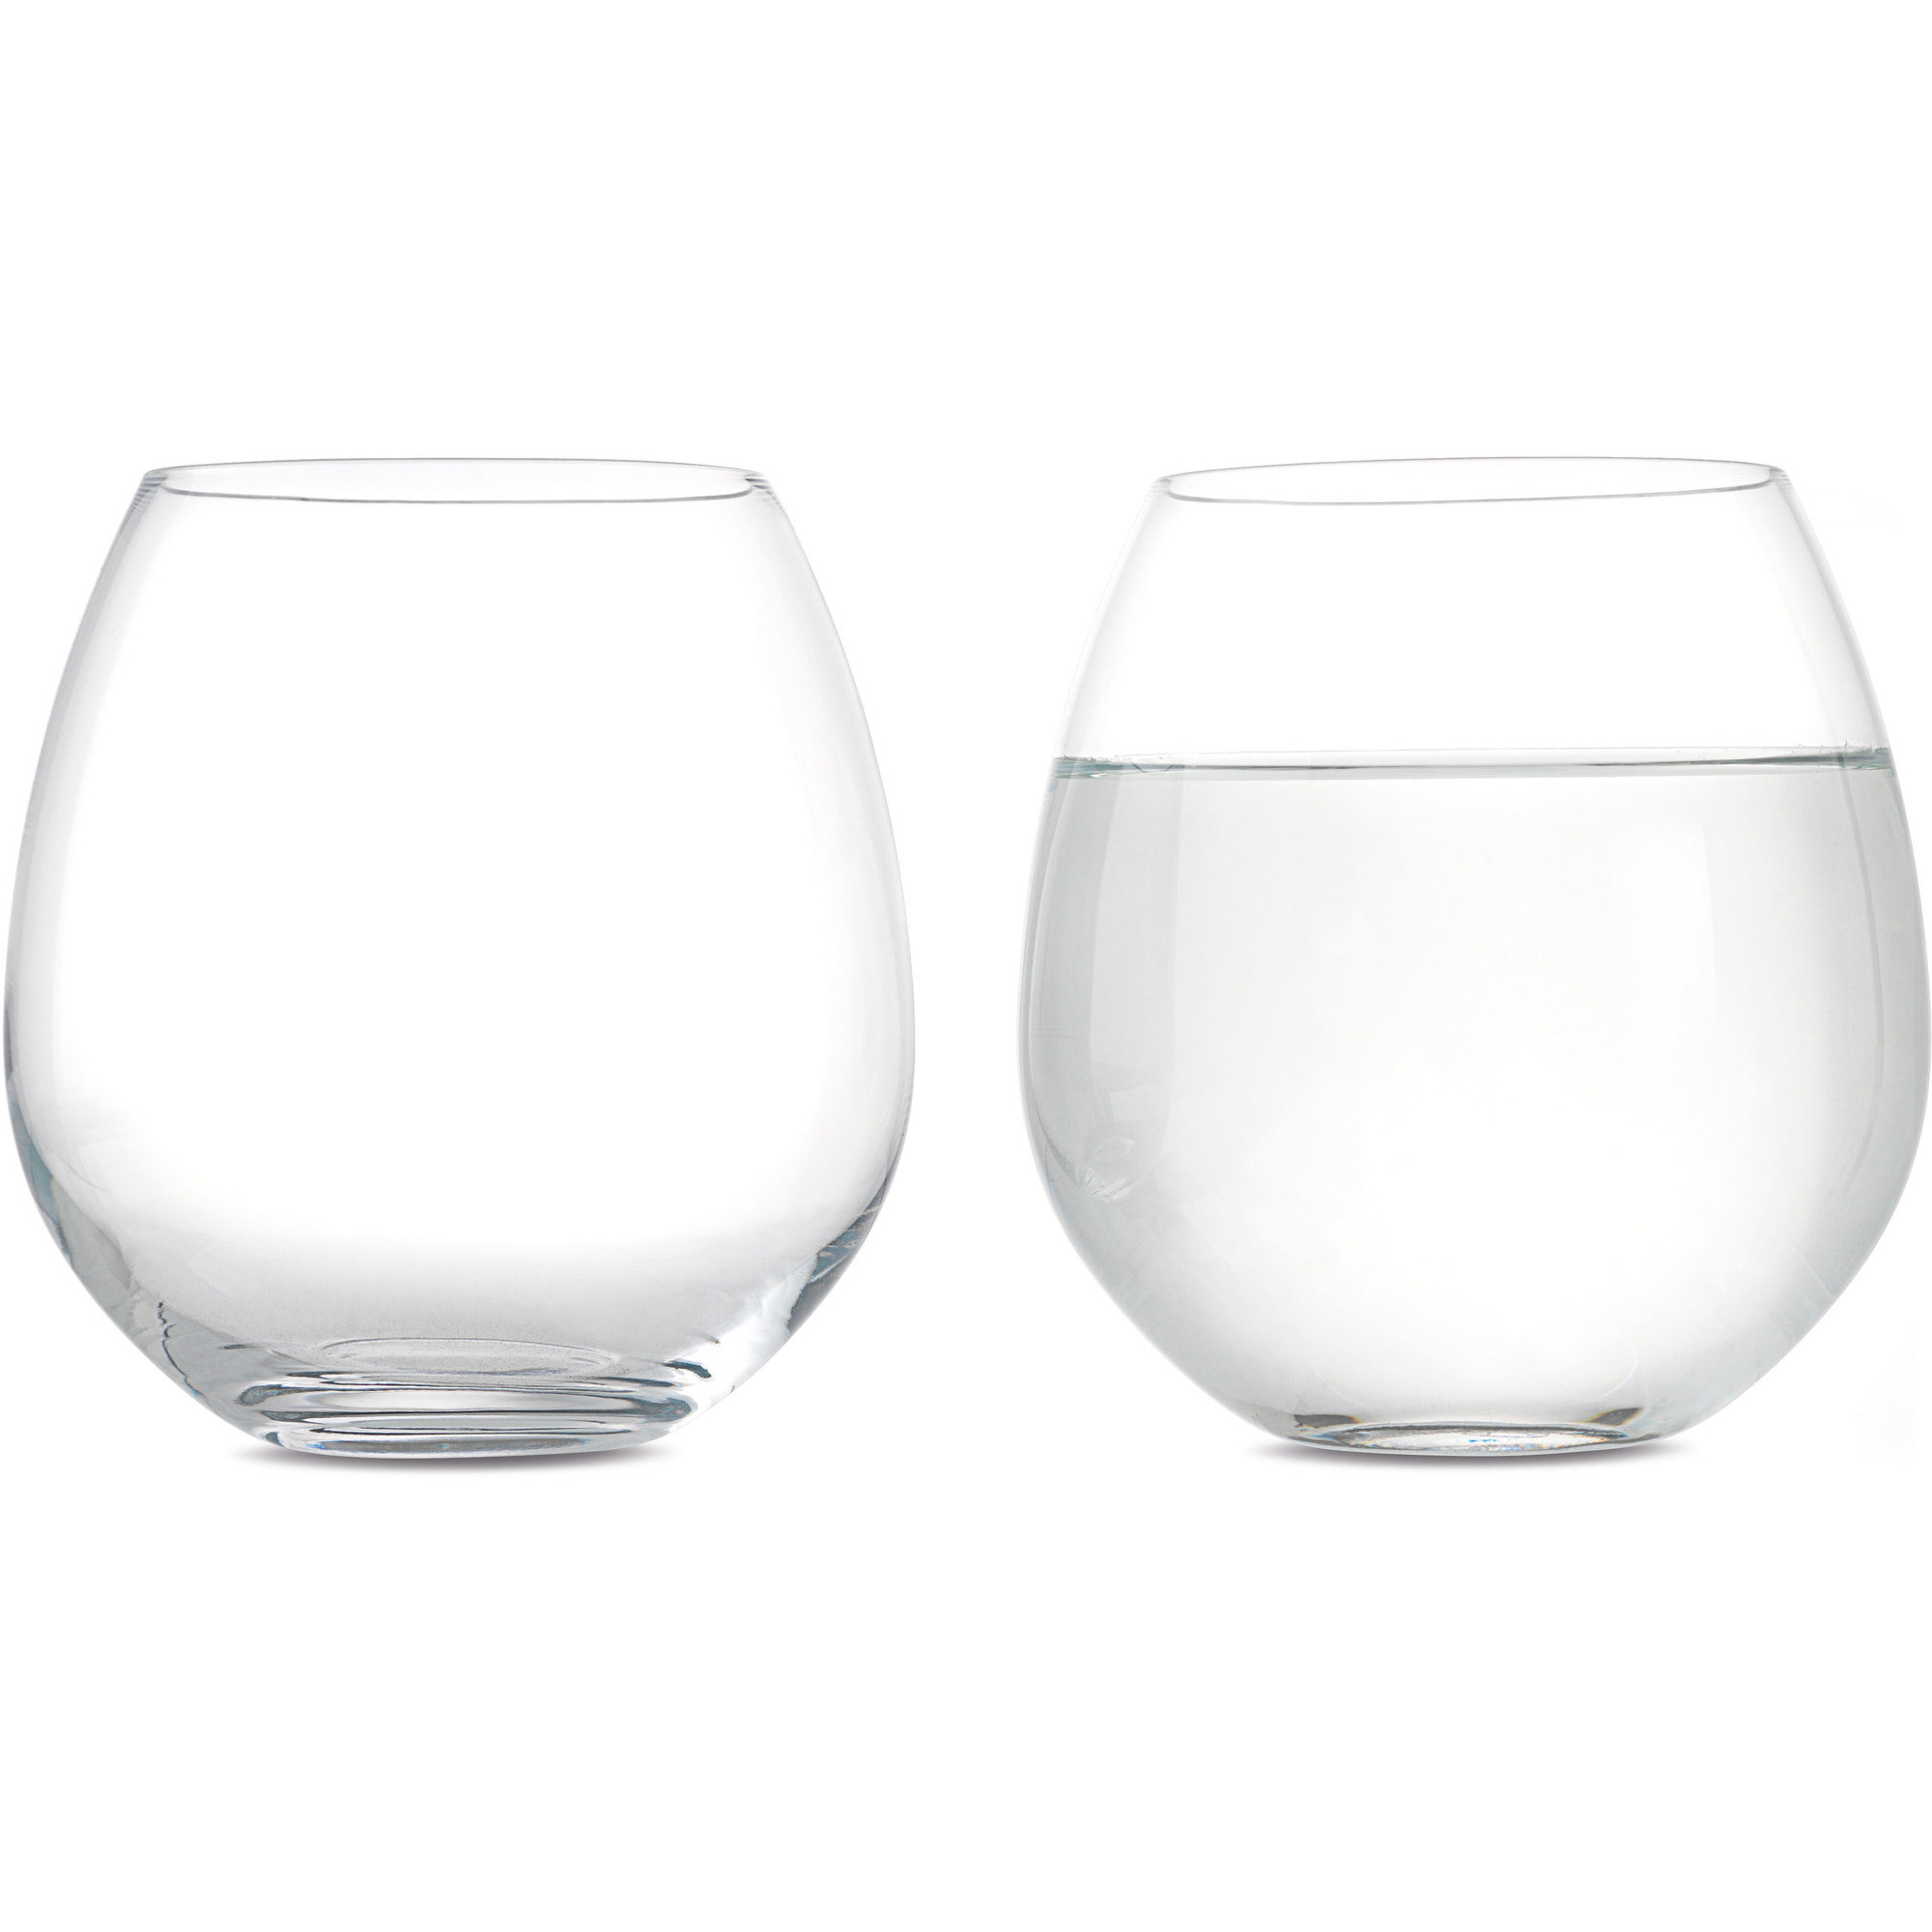 #1 på vores liste over vandglas er Vandglas